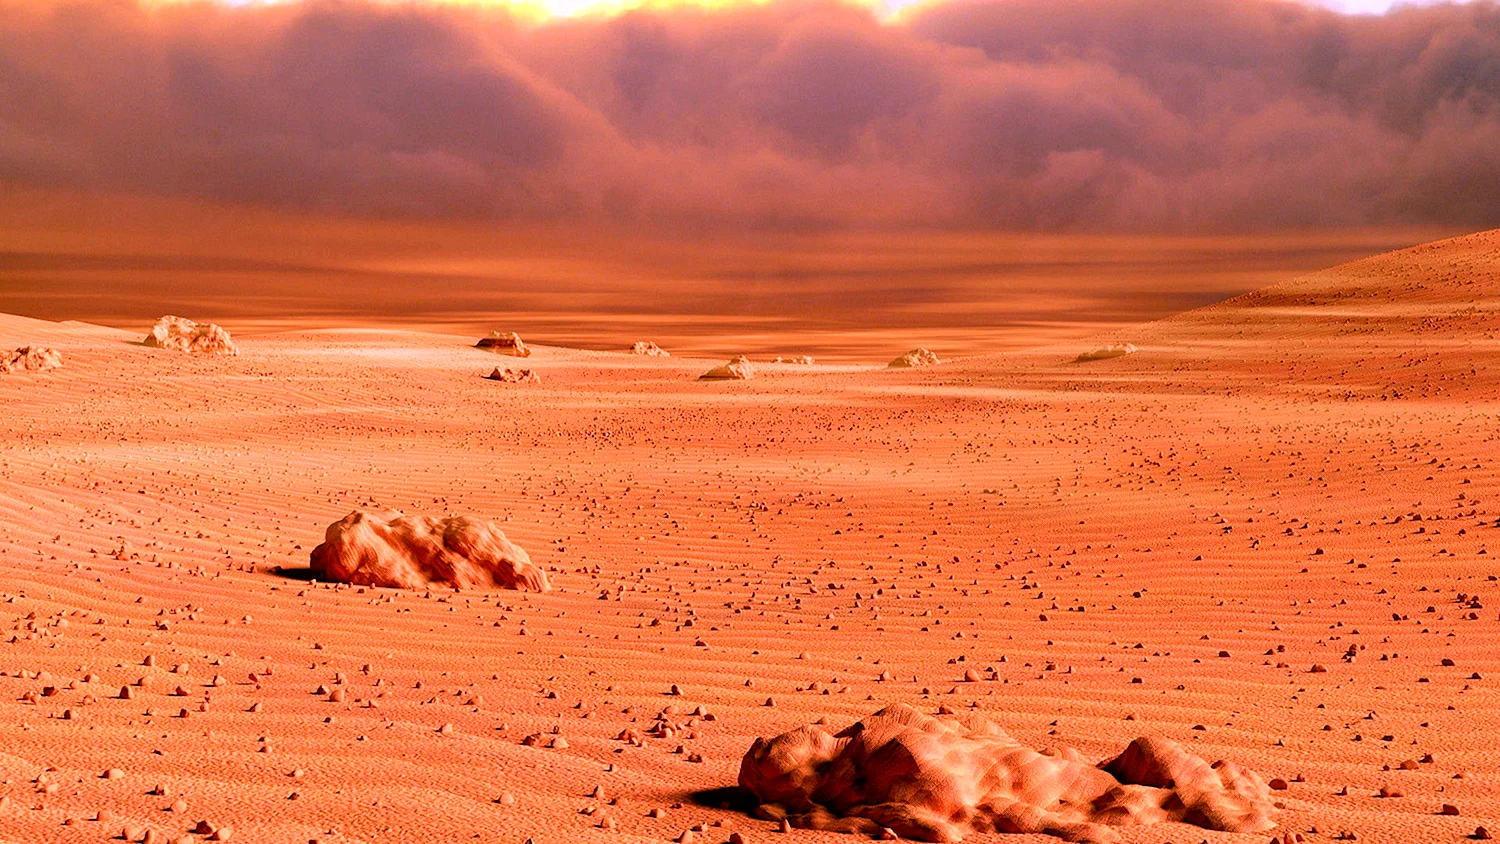 Великая Северная равнина на Марсе